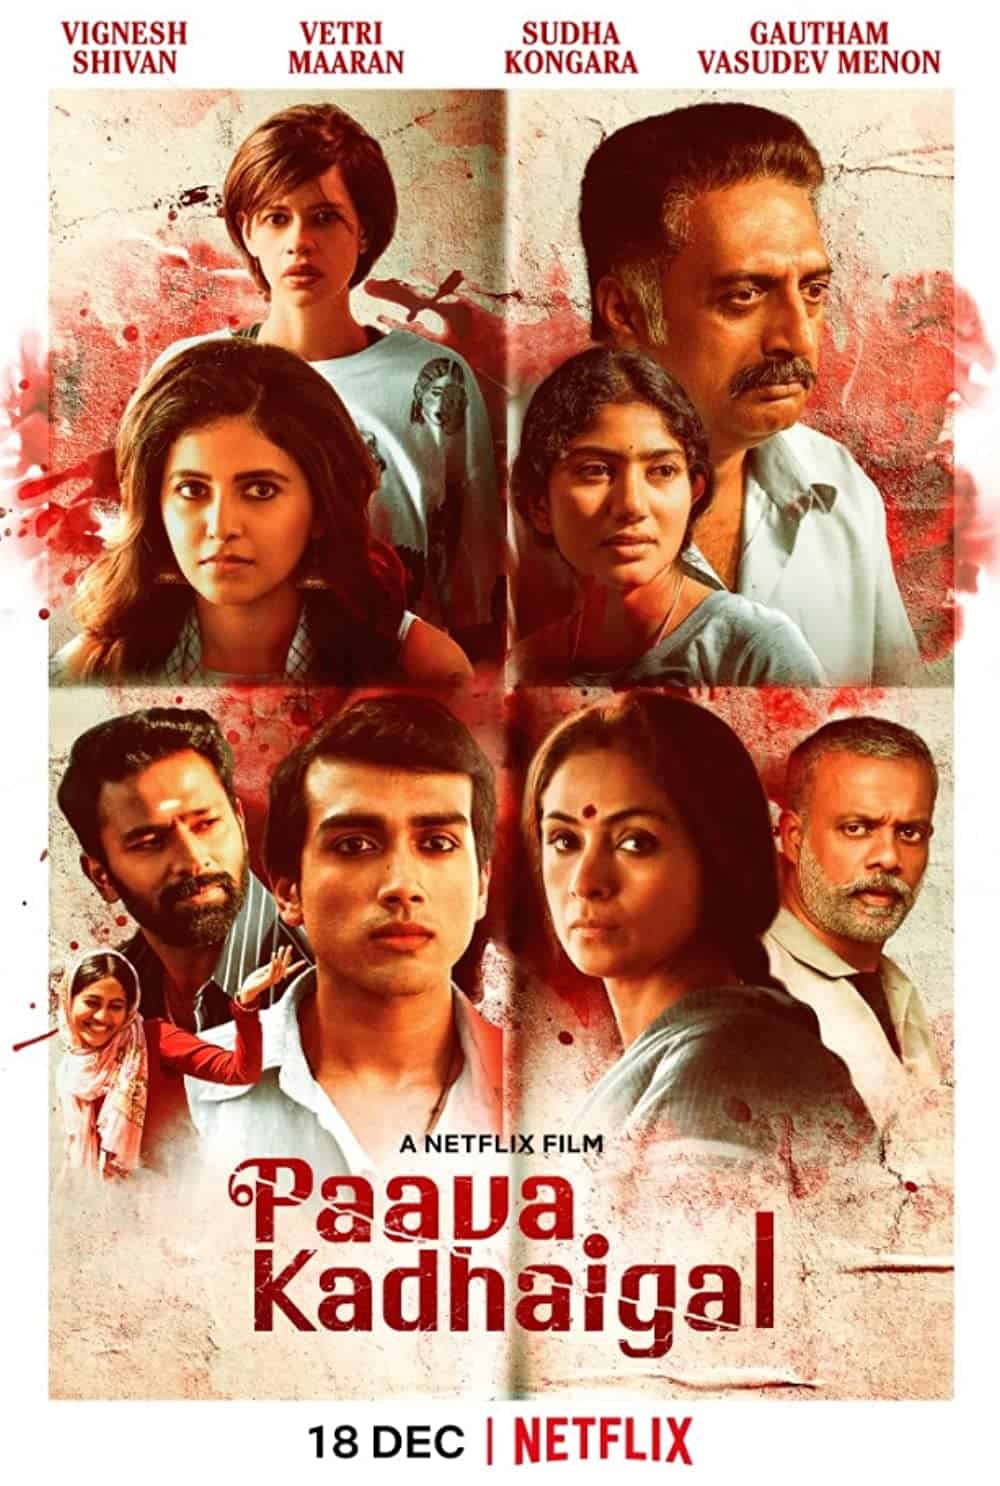 Paava Kadhaigal 2020 Tamil Drama Movie Online